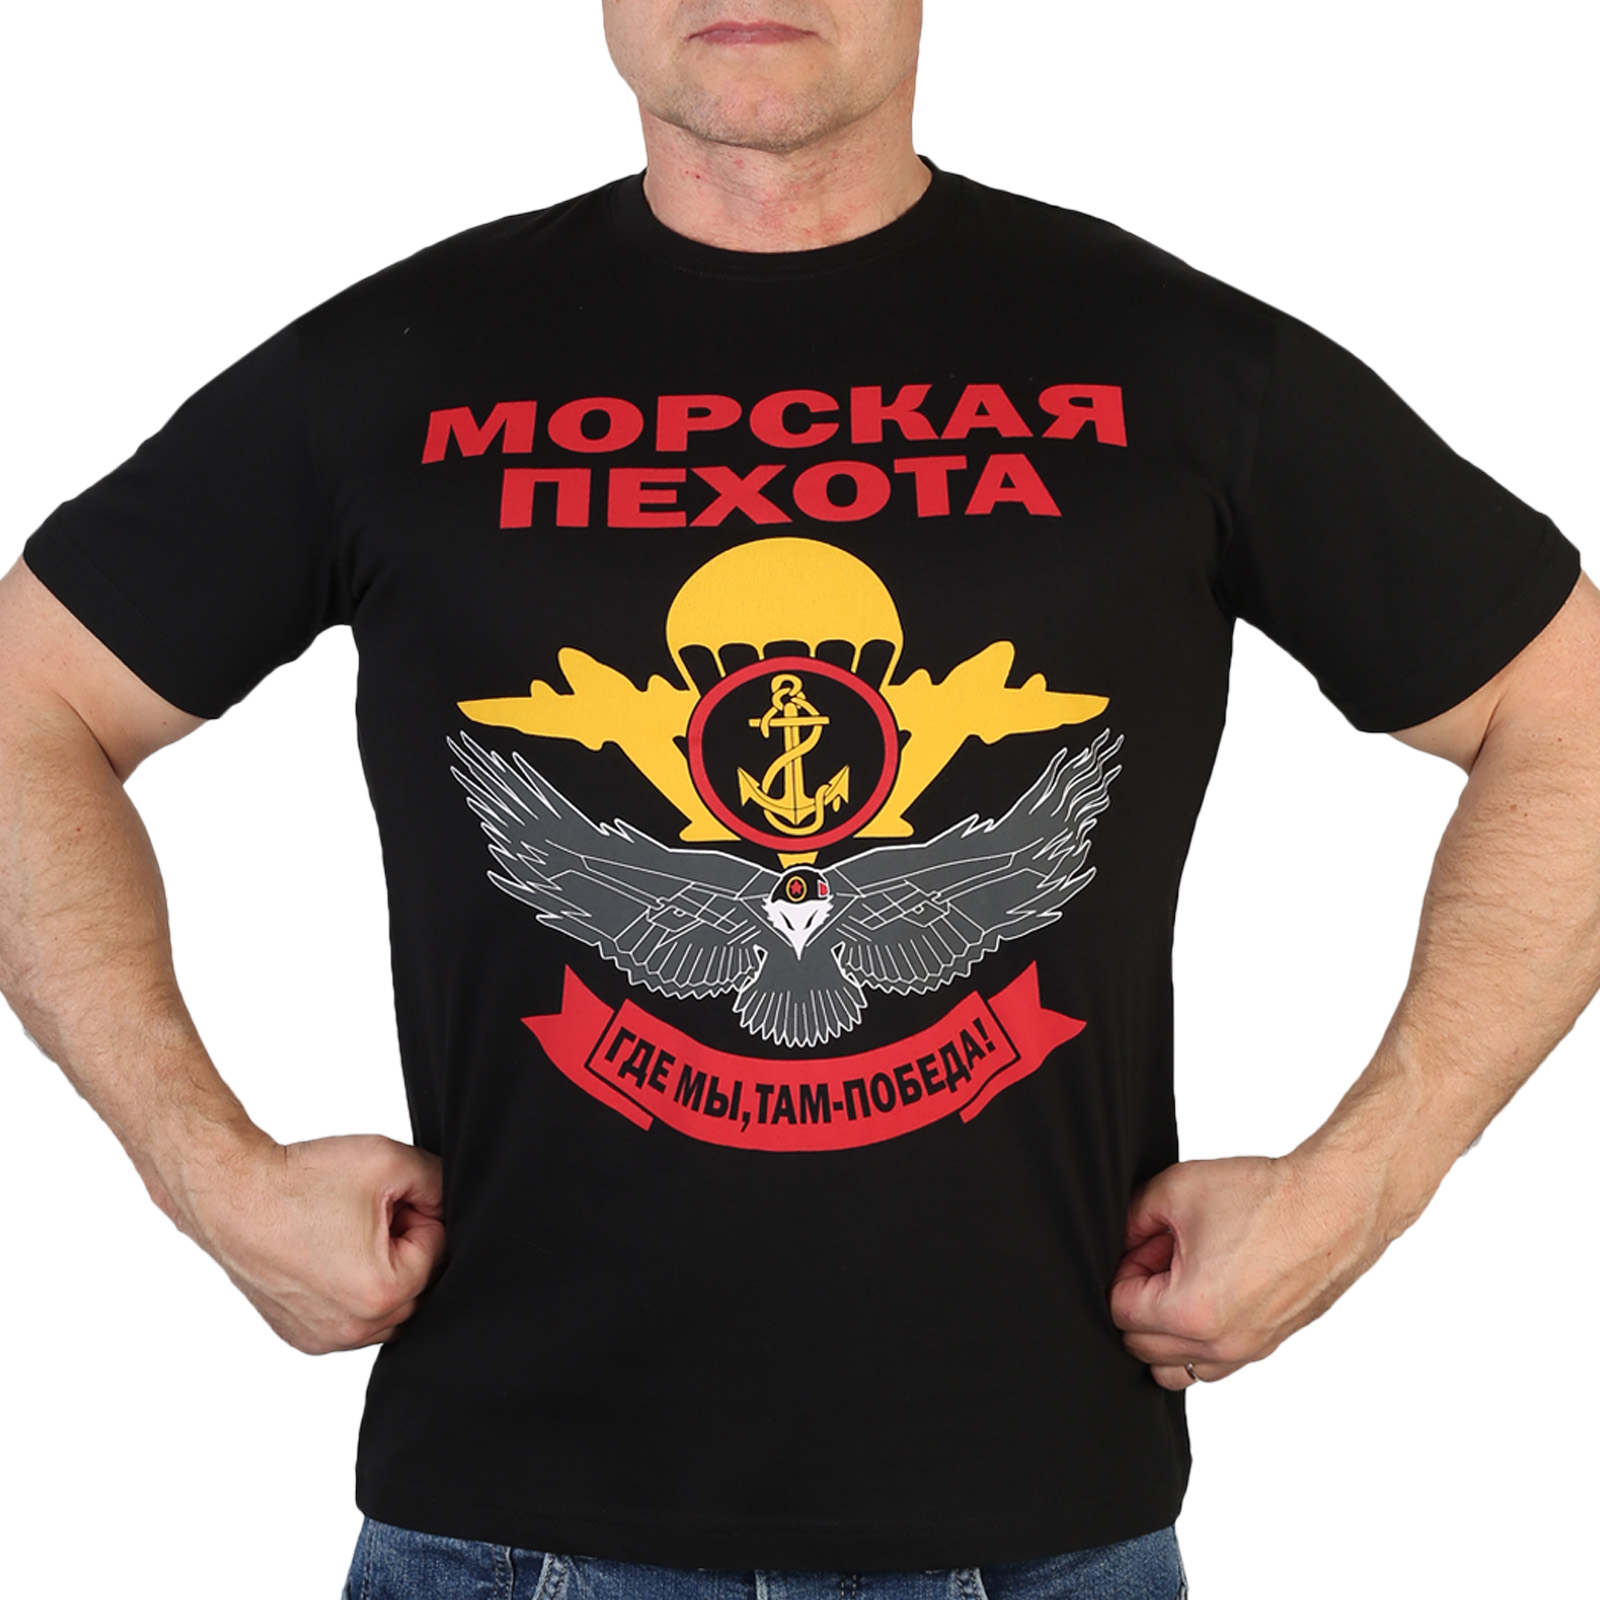 Купить футболку Морской пехоты в Москве